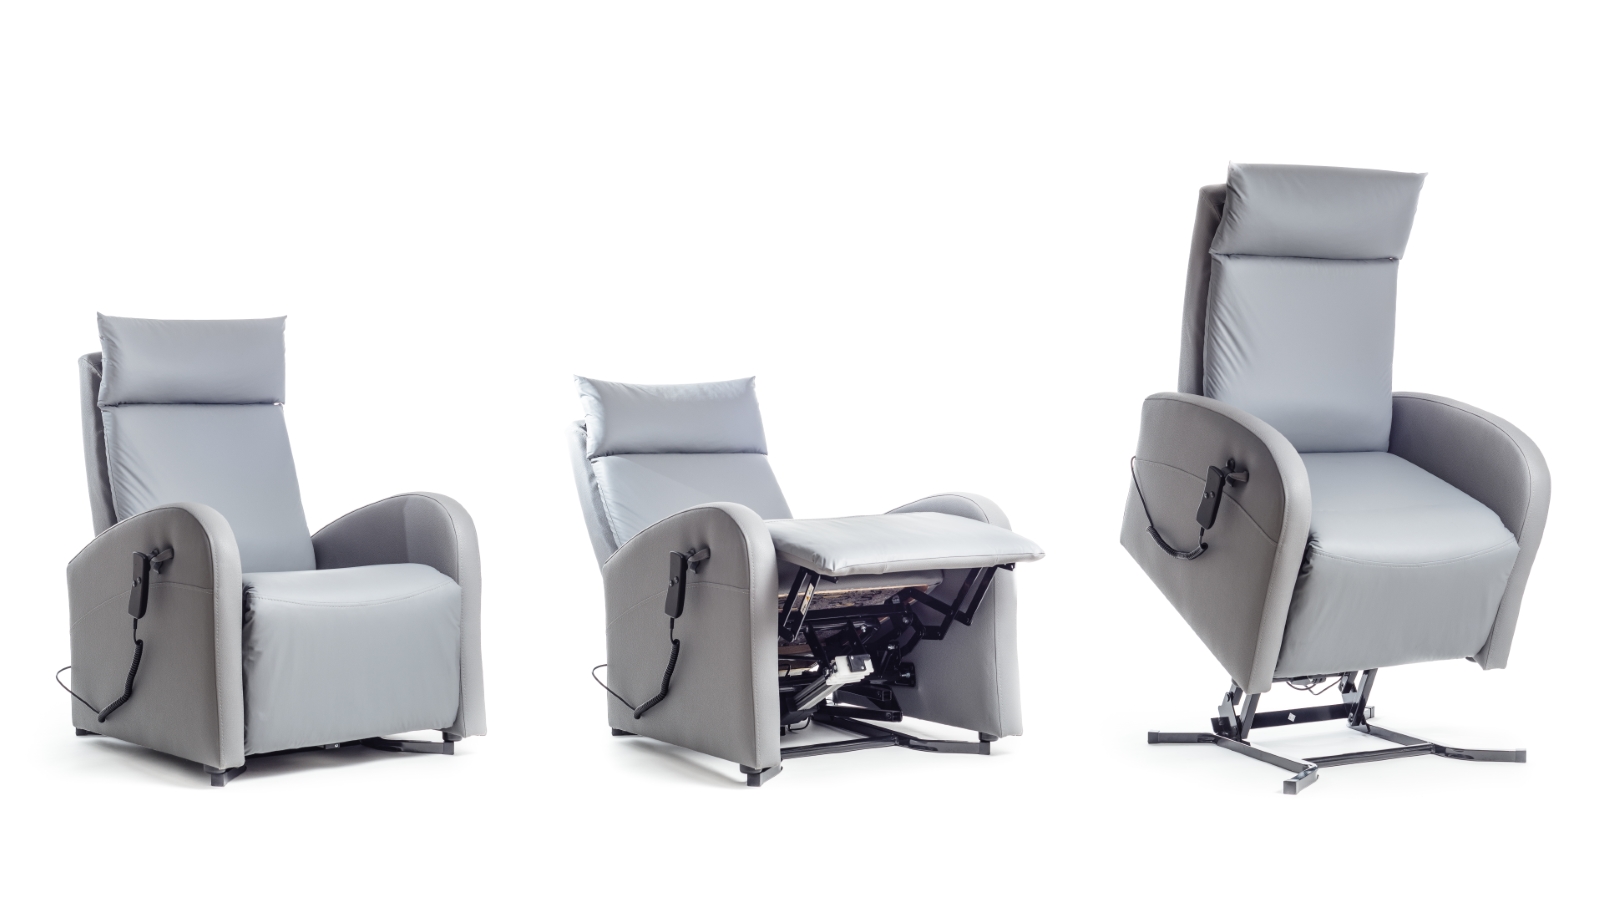 Drei Abbildungen eines Sessels: in Sitzposition, Liegeposition und nach vorn geneigt als Aufstehhilfe